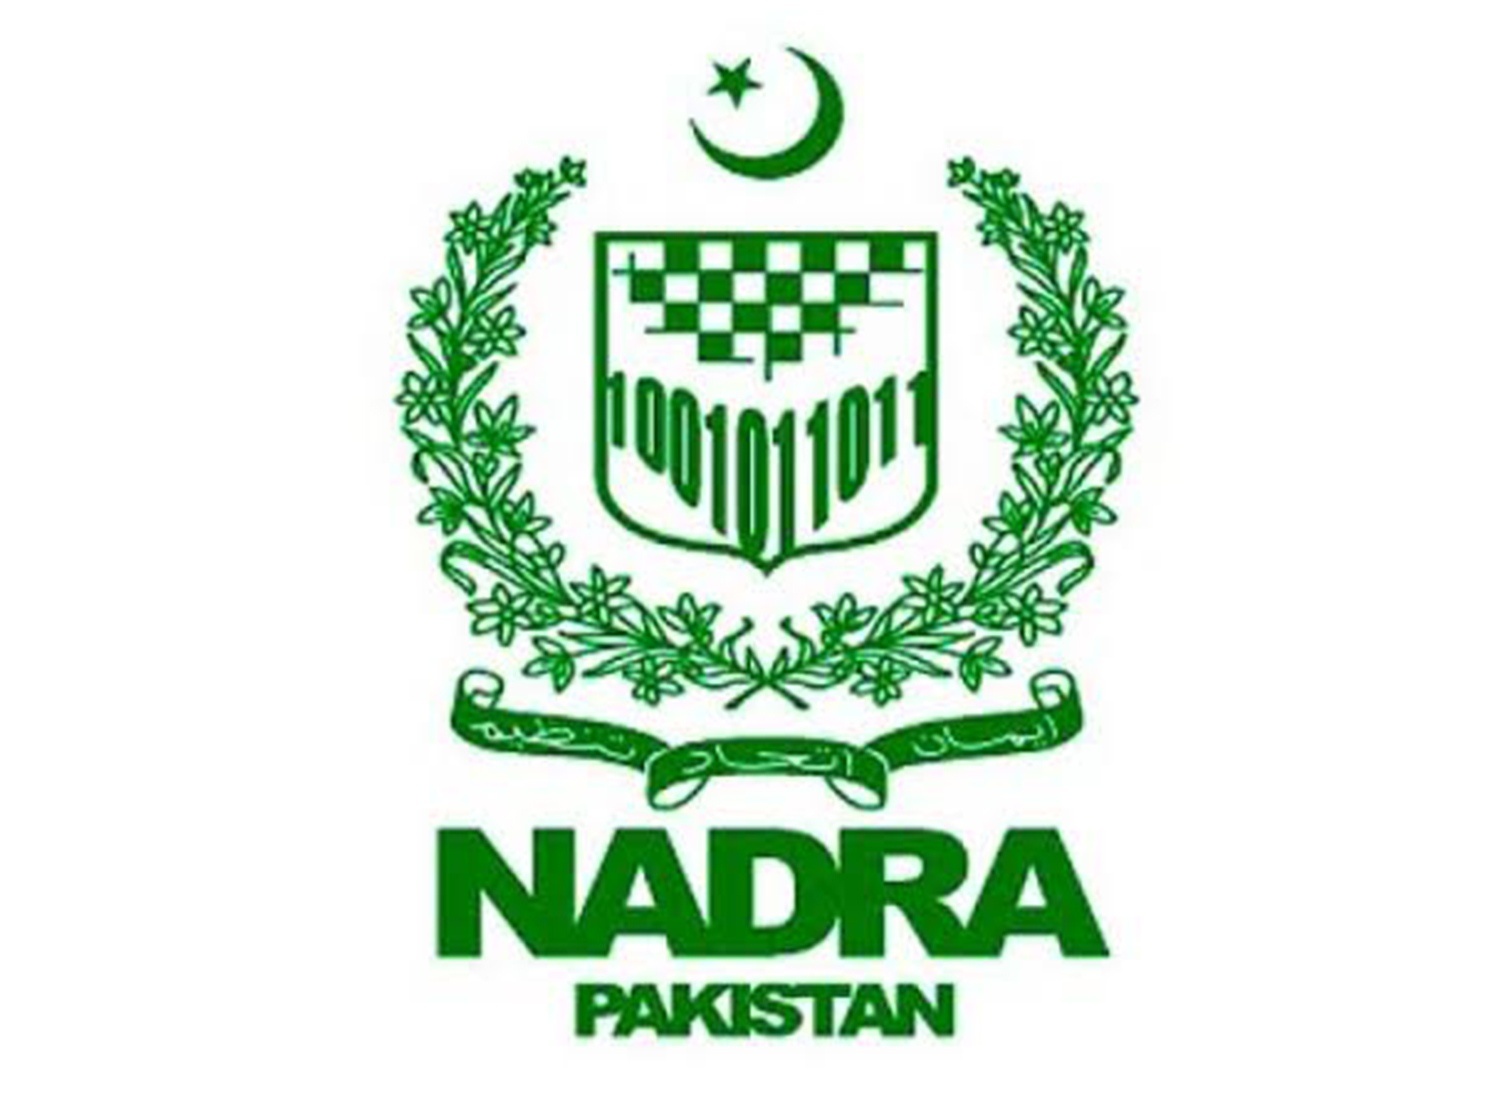 Nadra pakistan pfm client